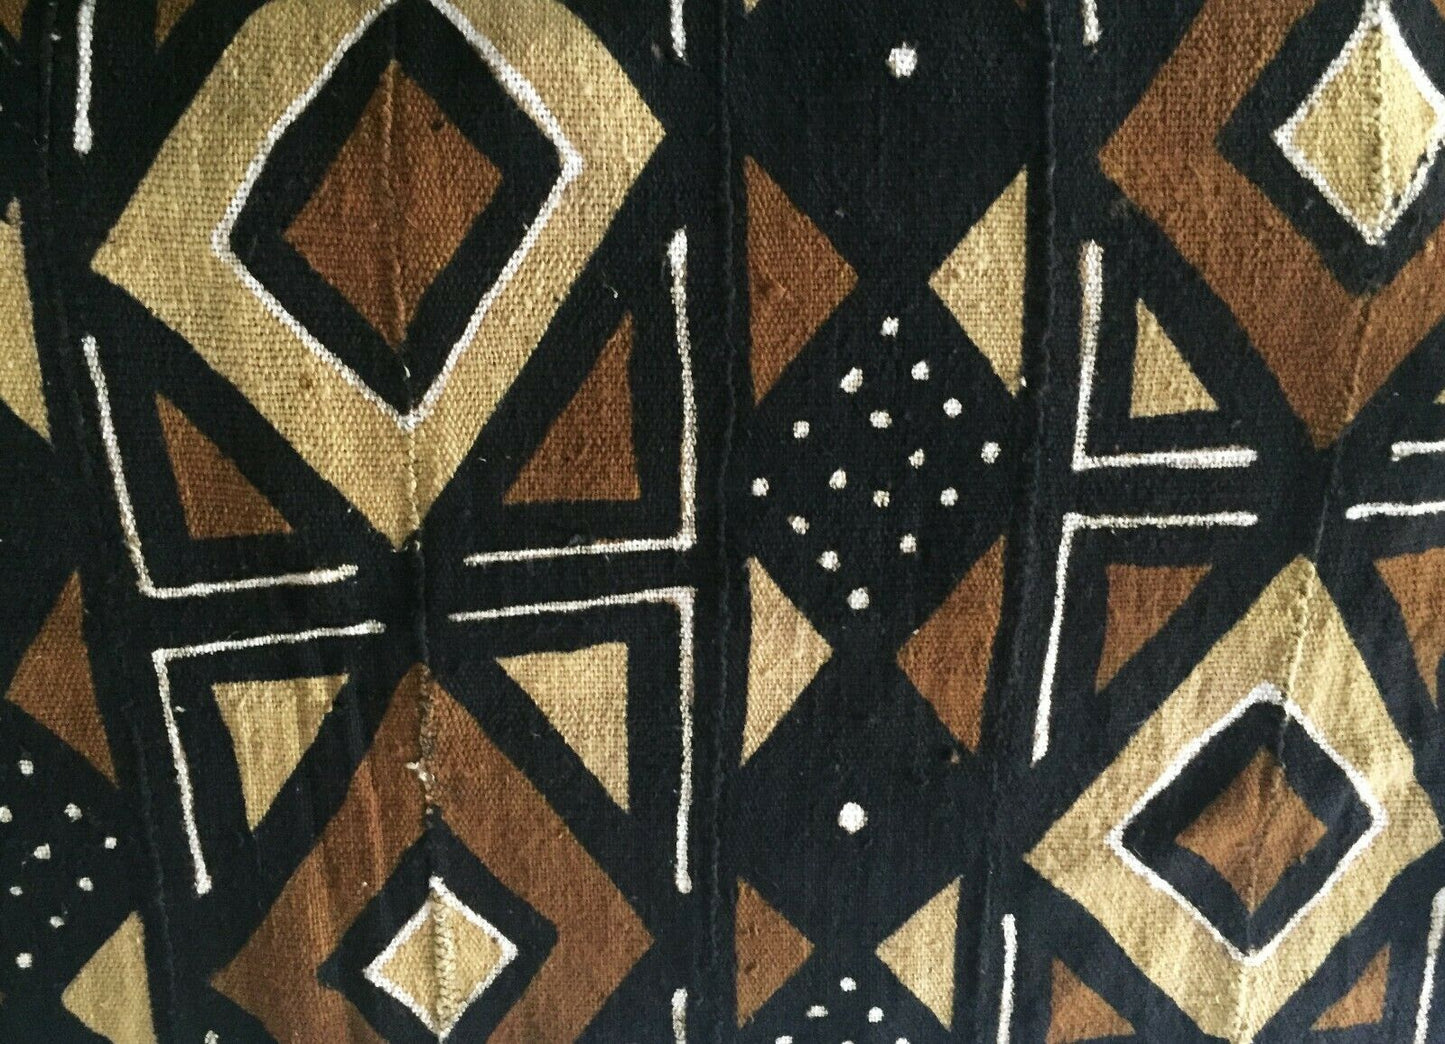 Superb Bogolan Mali Mud Cloth Textile 40" by 60" #1980